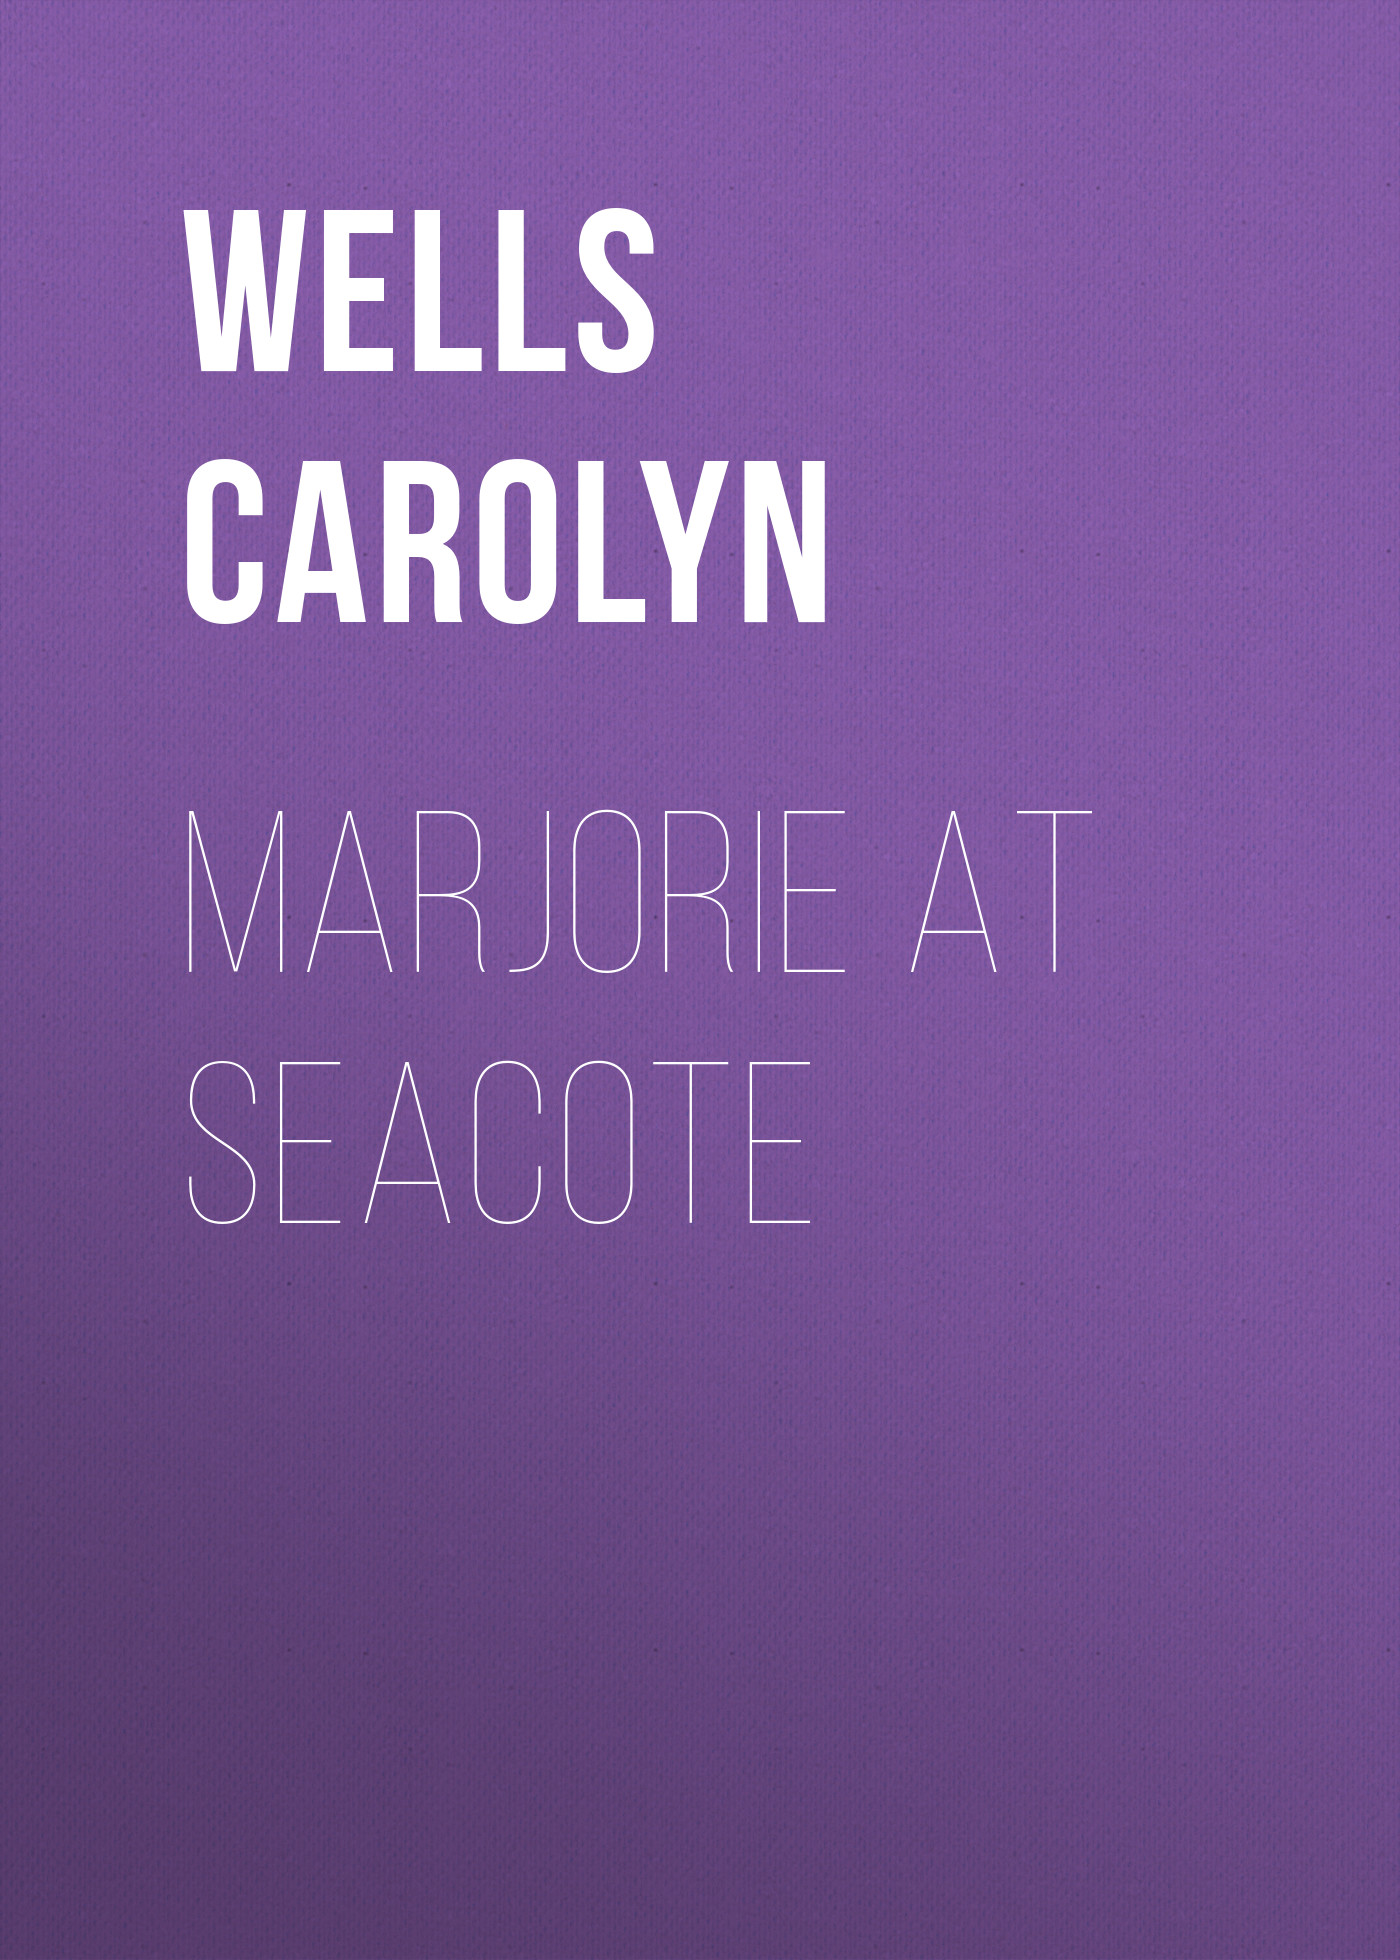 Книга Marjorie at Seacote из серии , созданная Carolyn Wells, может относится к жанру Зарубежные детские книги, Зарубежная старинная литература, Зарубежная классика. Стоимость электронной книги Marjorie at Seacote с идентификатором 36323372 составляет 0 руб.